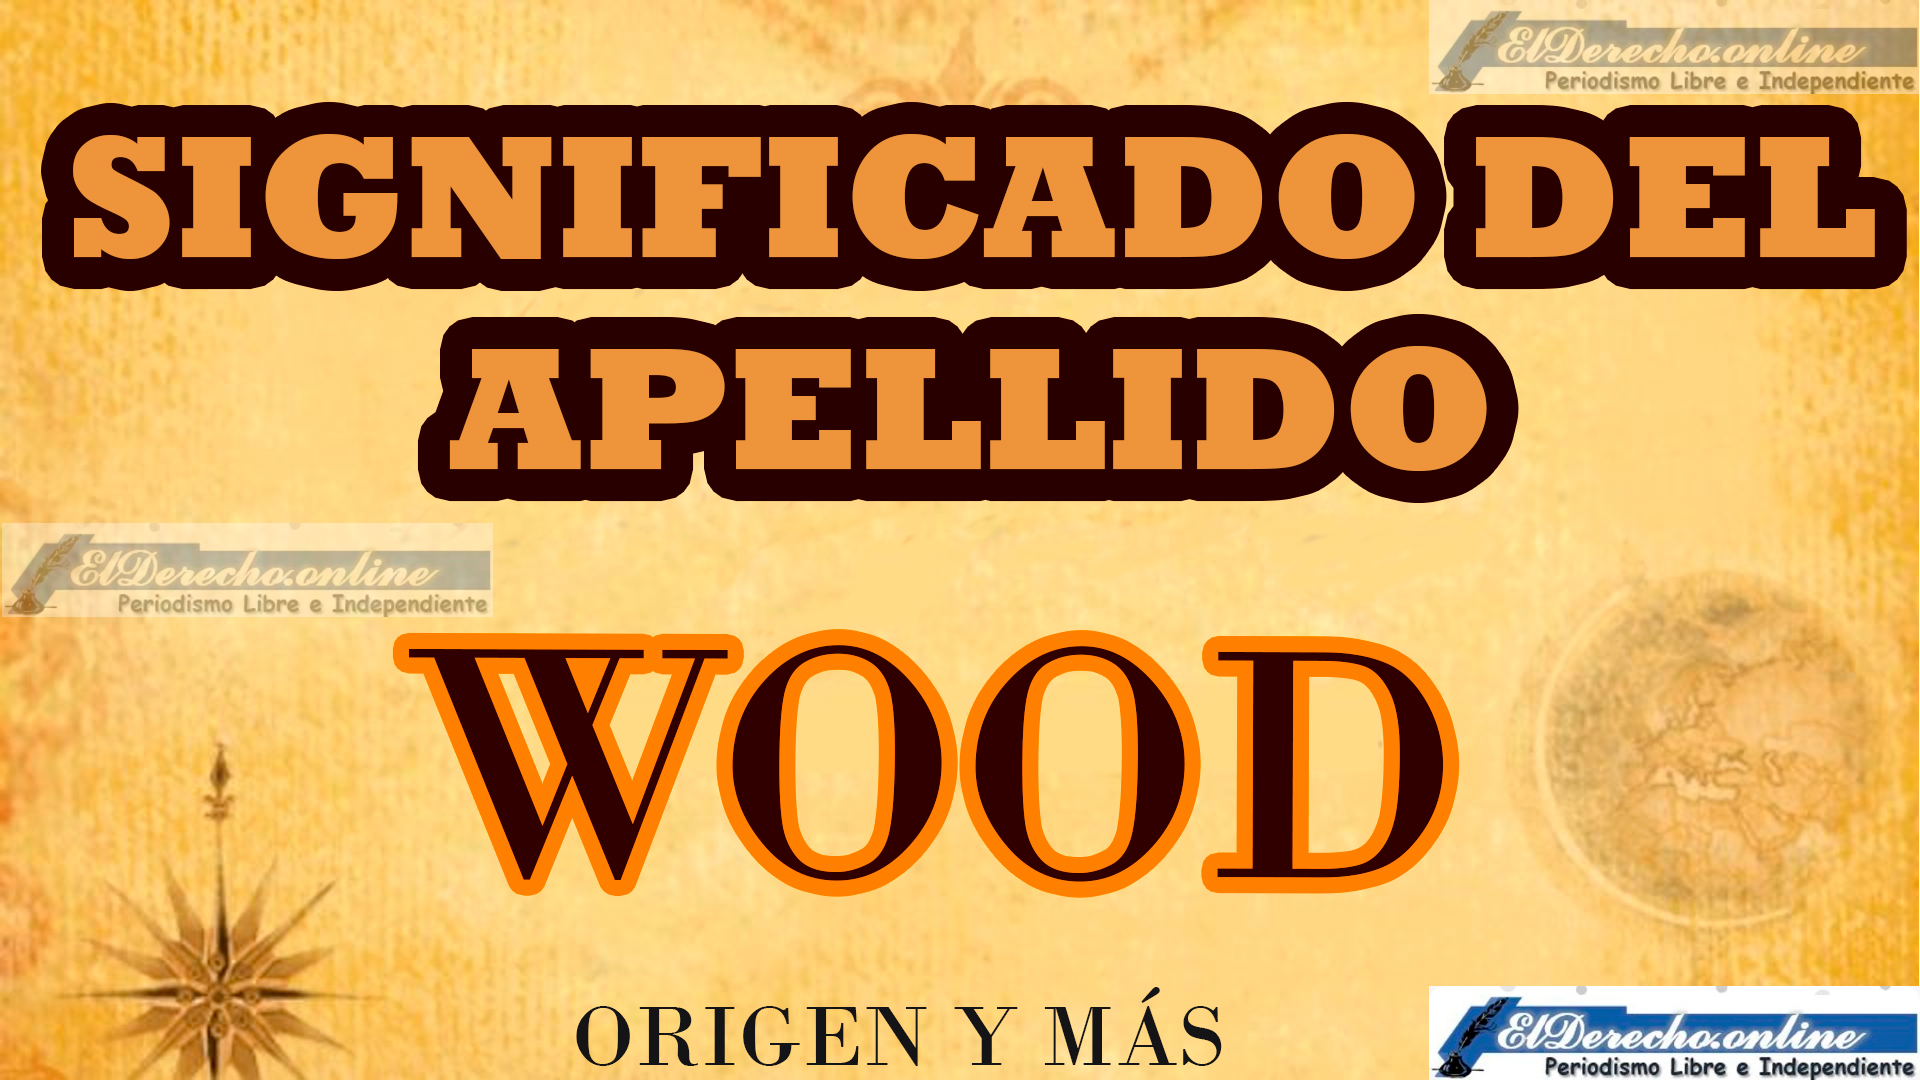 Significado del apellido Wood, Origen y más